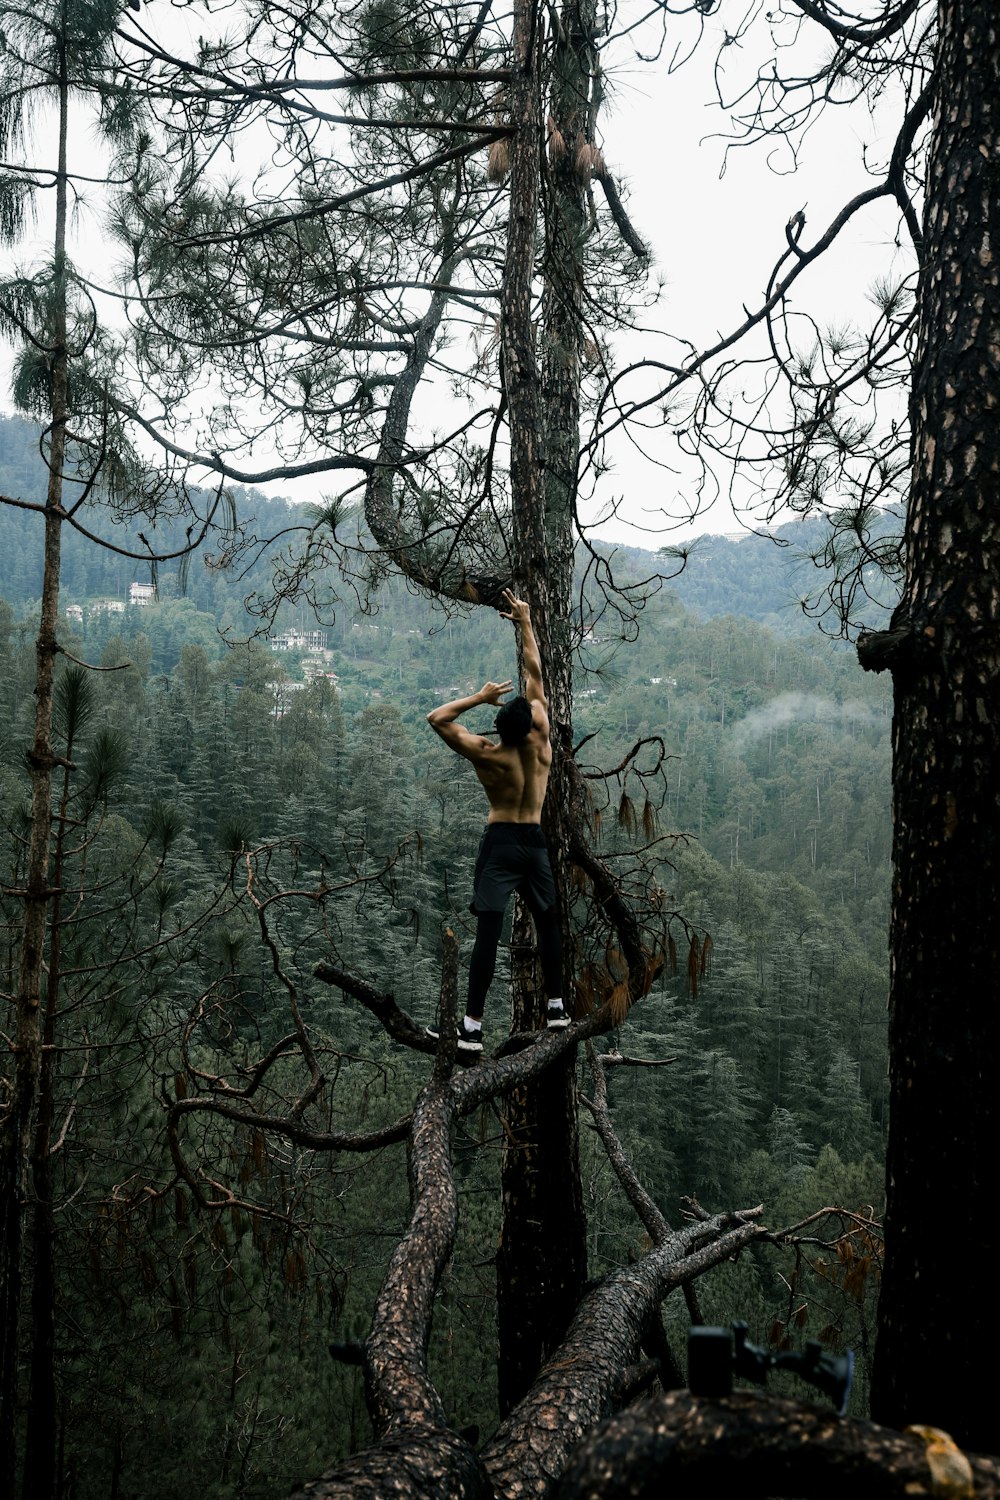 a person climbing a tree